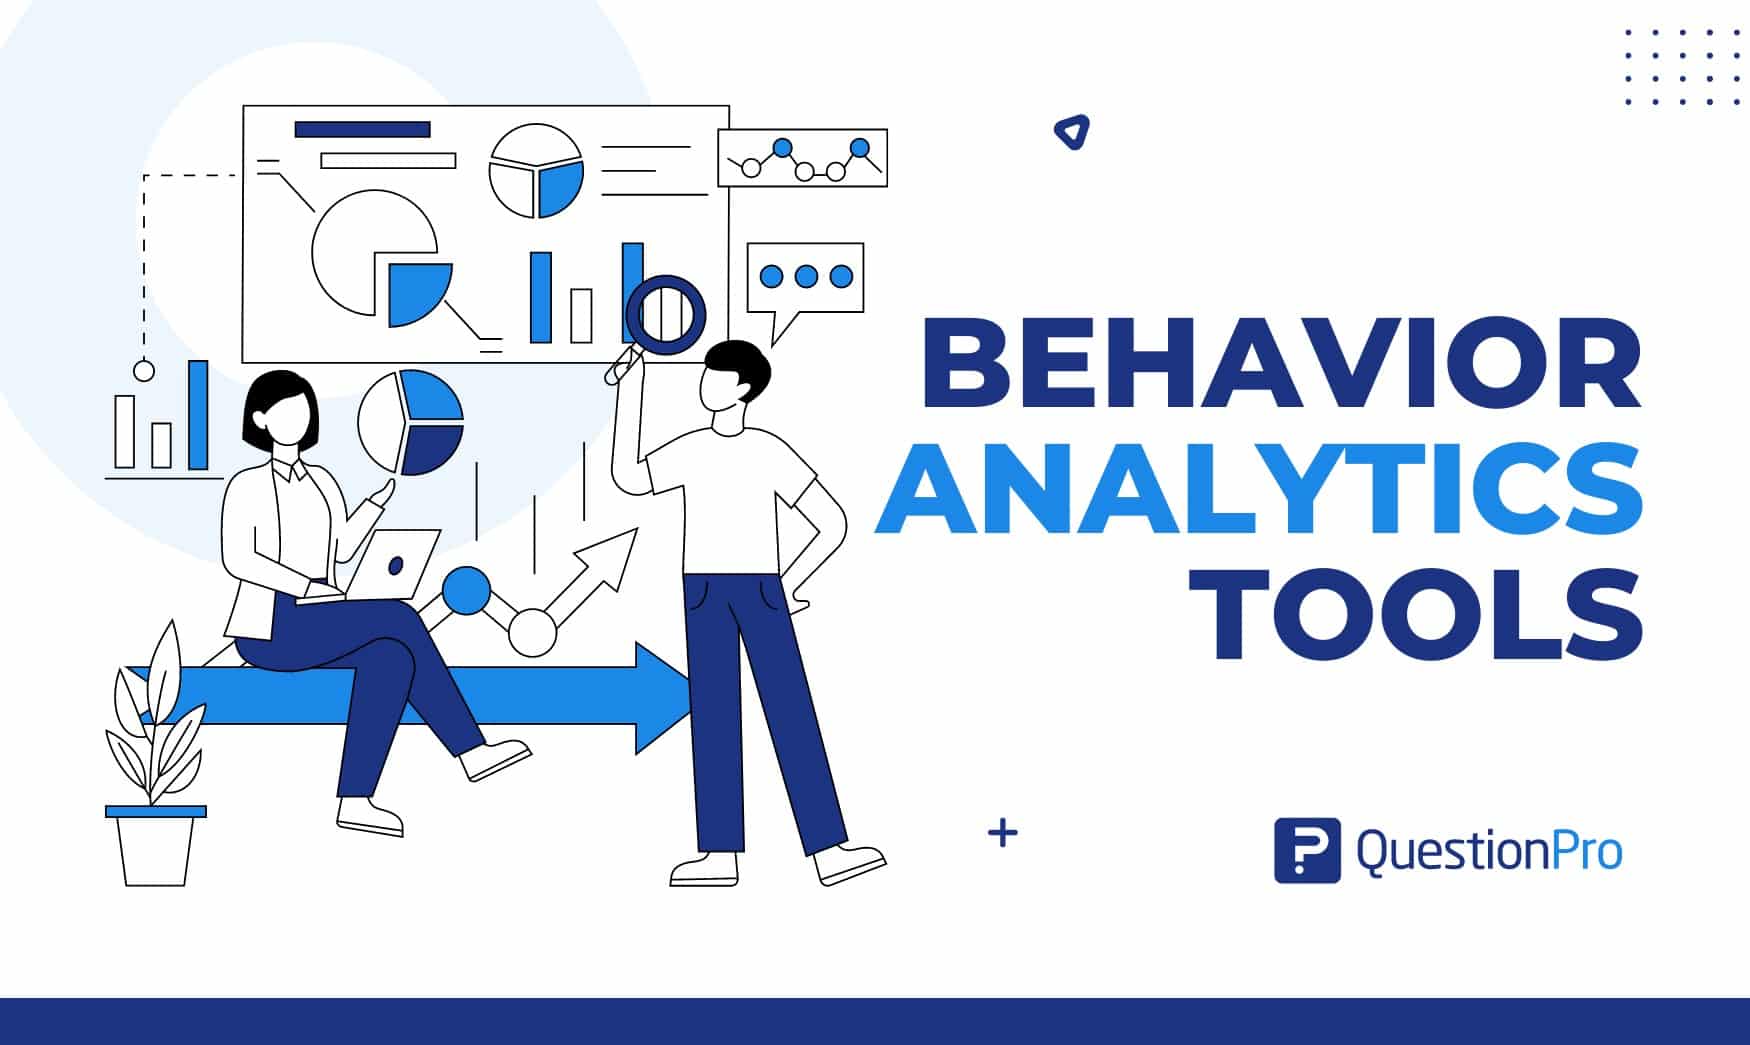 Behavior analytics tools